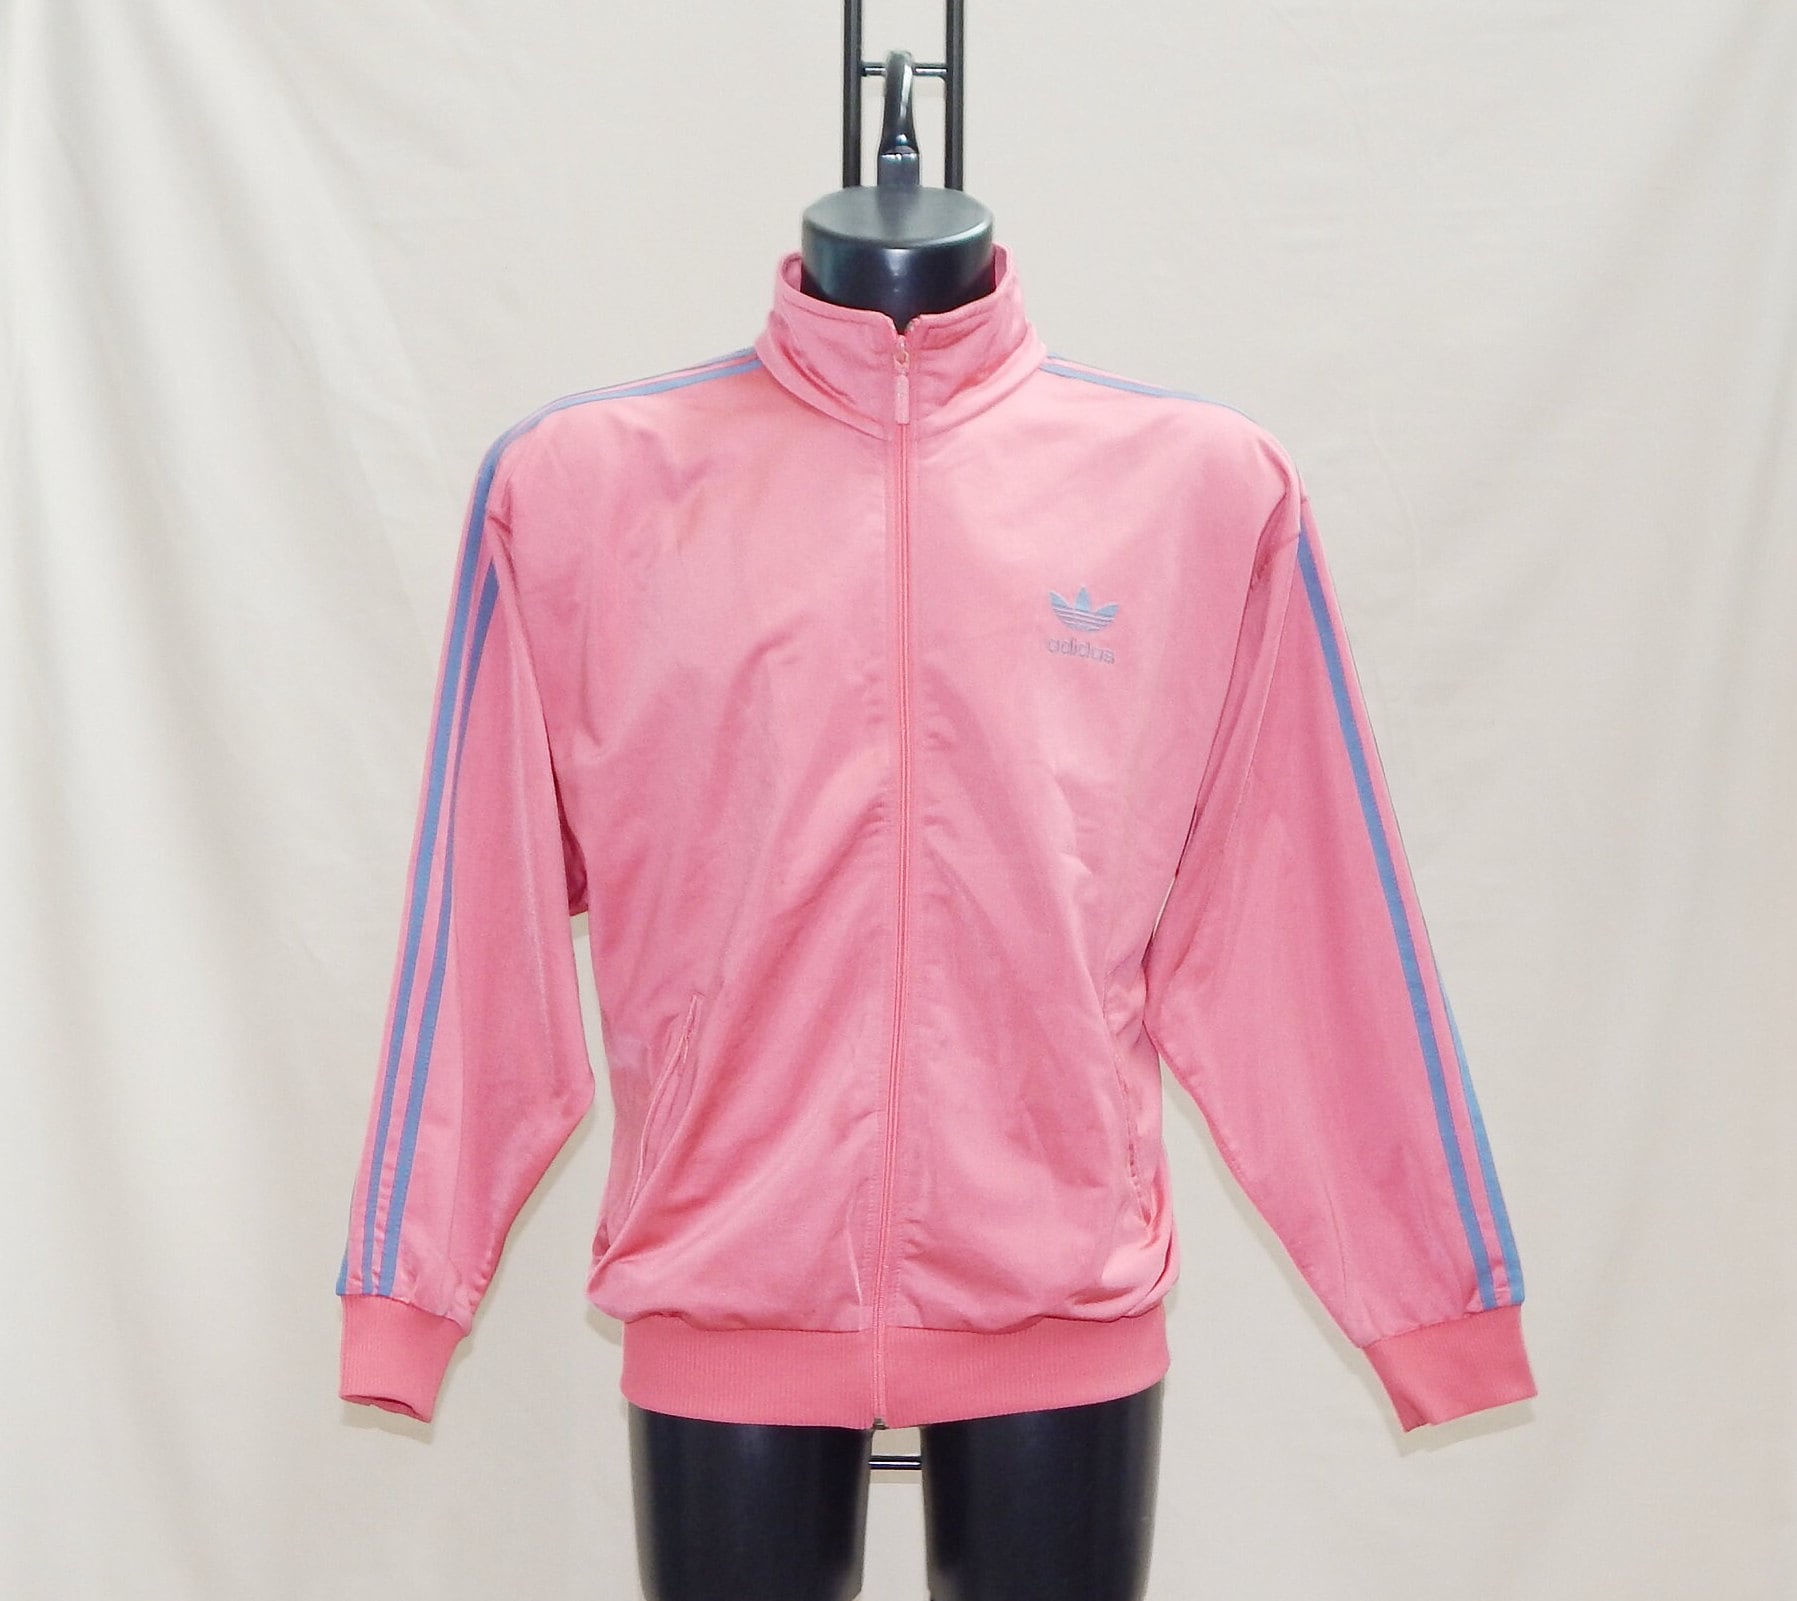 Adidas Pink Jacket - Etsy